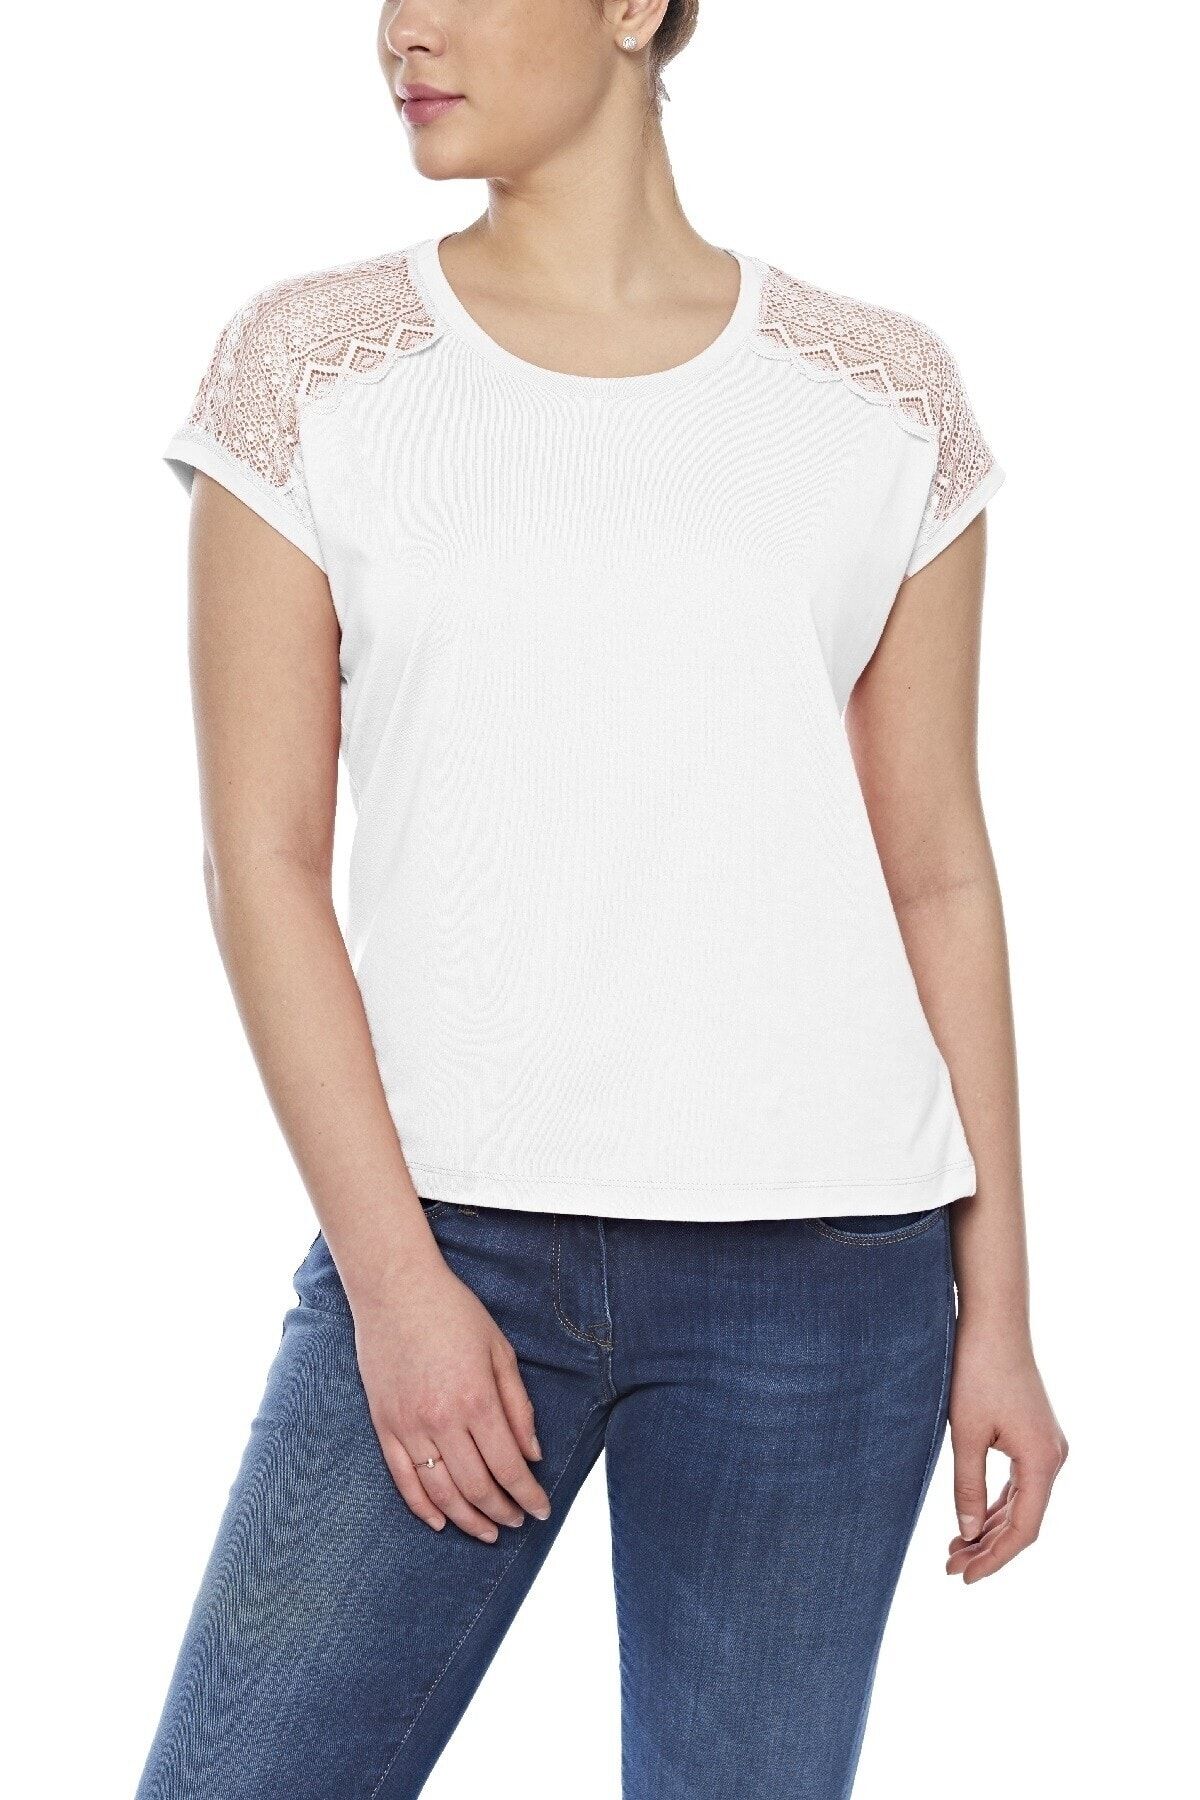 fsm1453 Kadın Pamuklu Modal Kolsuz Comfort Fit Yuvarlak Yaka Dantelli T-shirt -2408